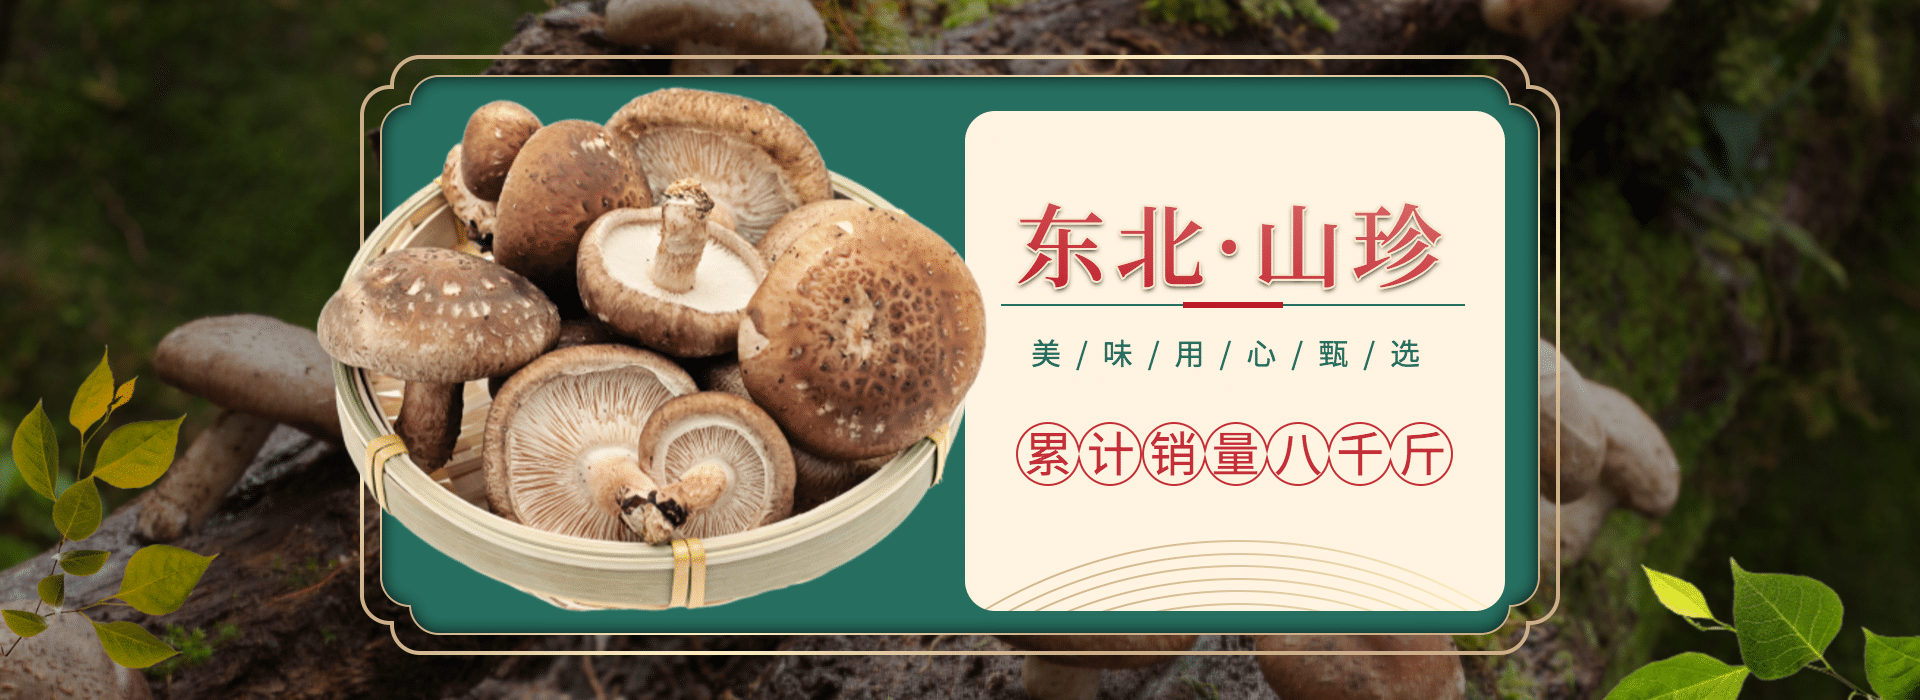 食品/菌菇介绍海报预览效果